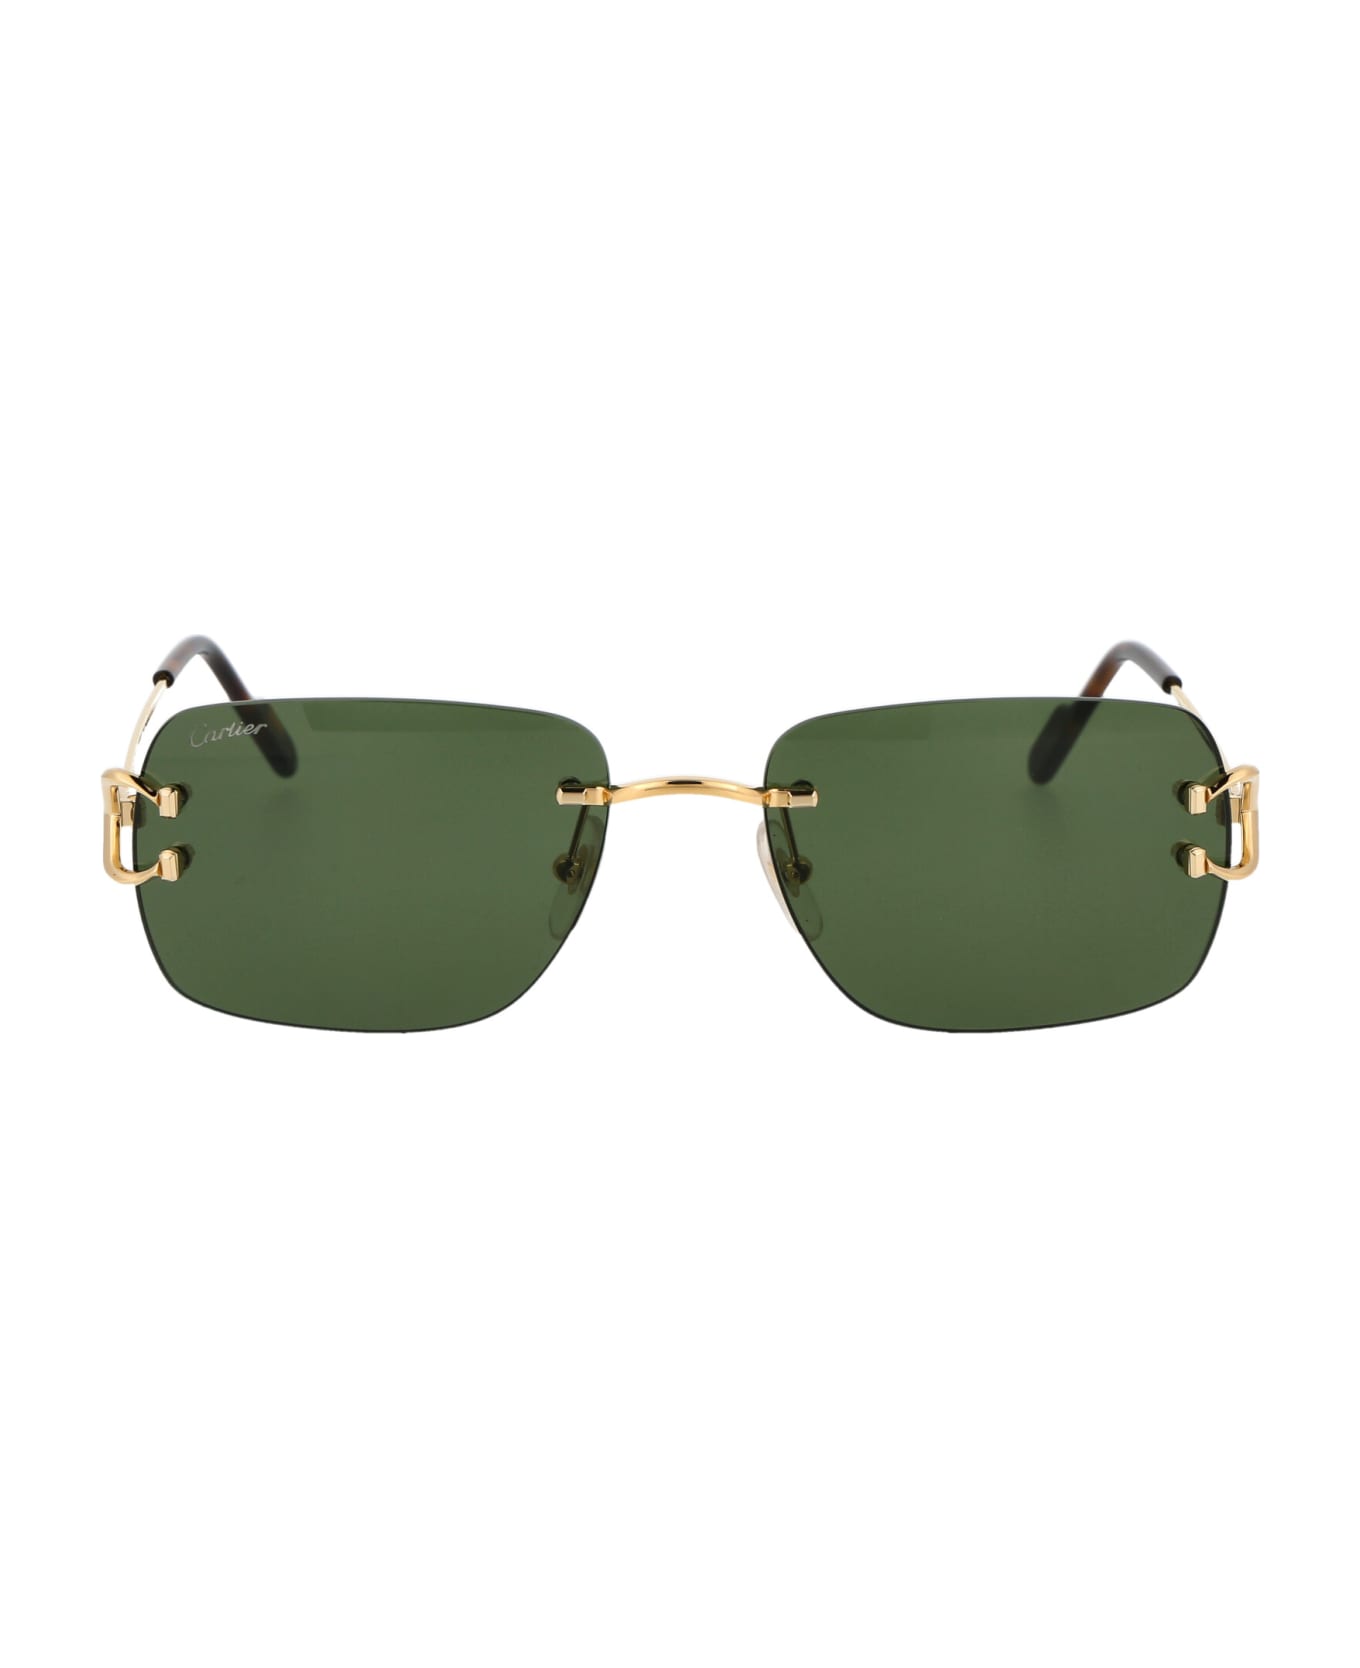 Cartier Eyewear Ct0330s Sunglasses - 002 GOLD GOLD GREEN